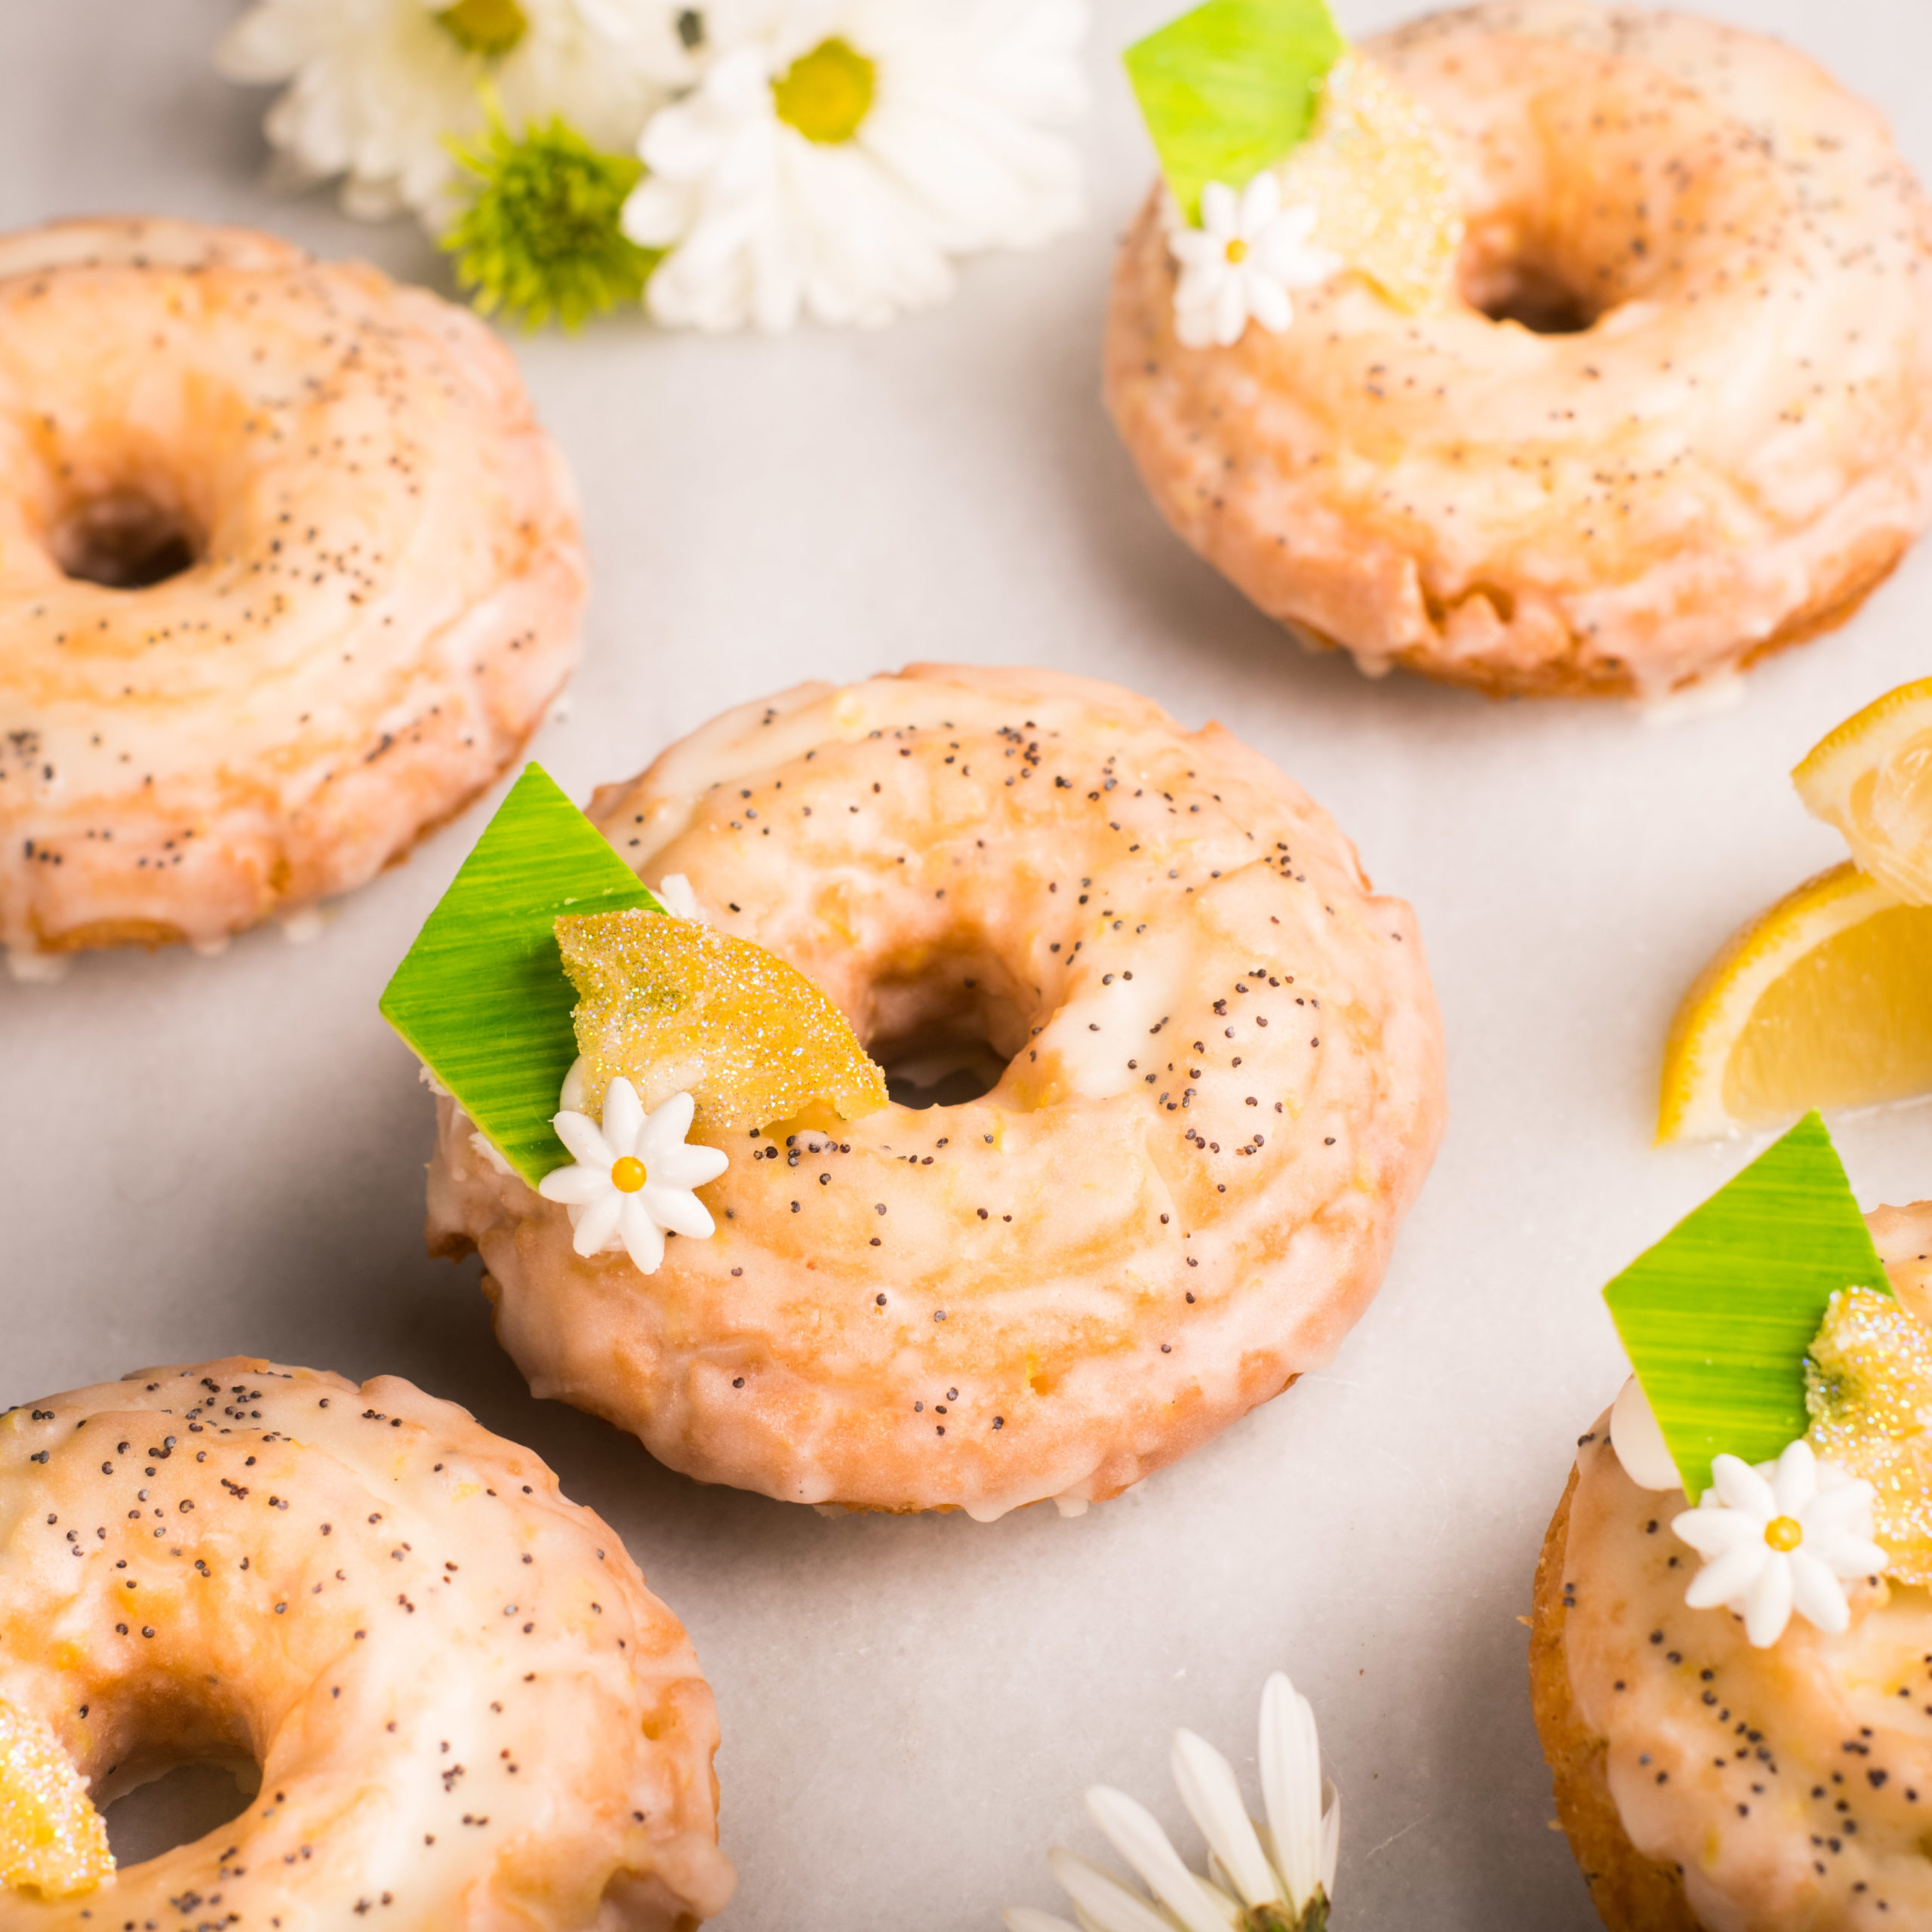 Winter Park Donuts from The Glass Knife - Lemon Poppyseed Cake Donut